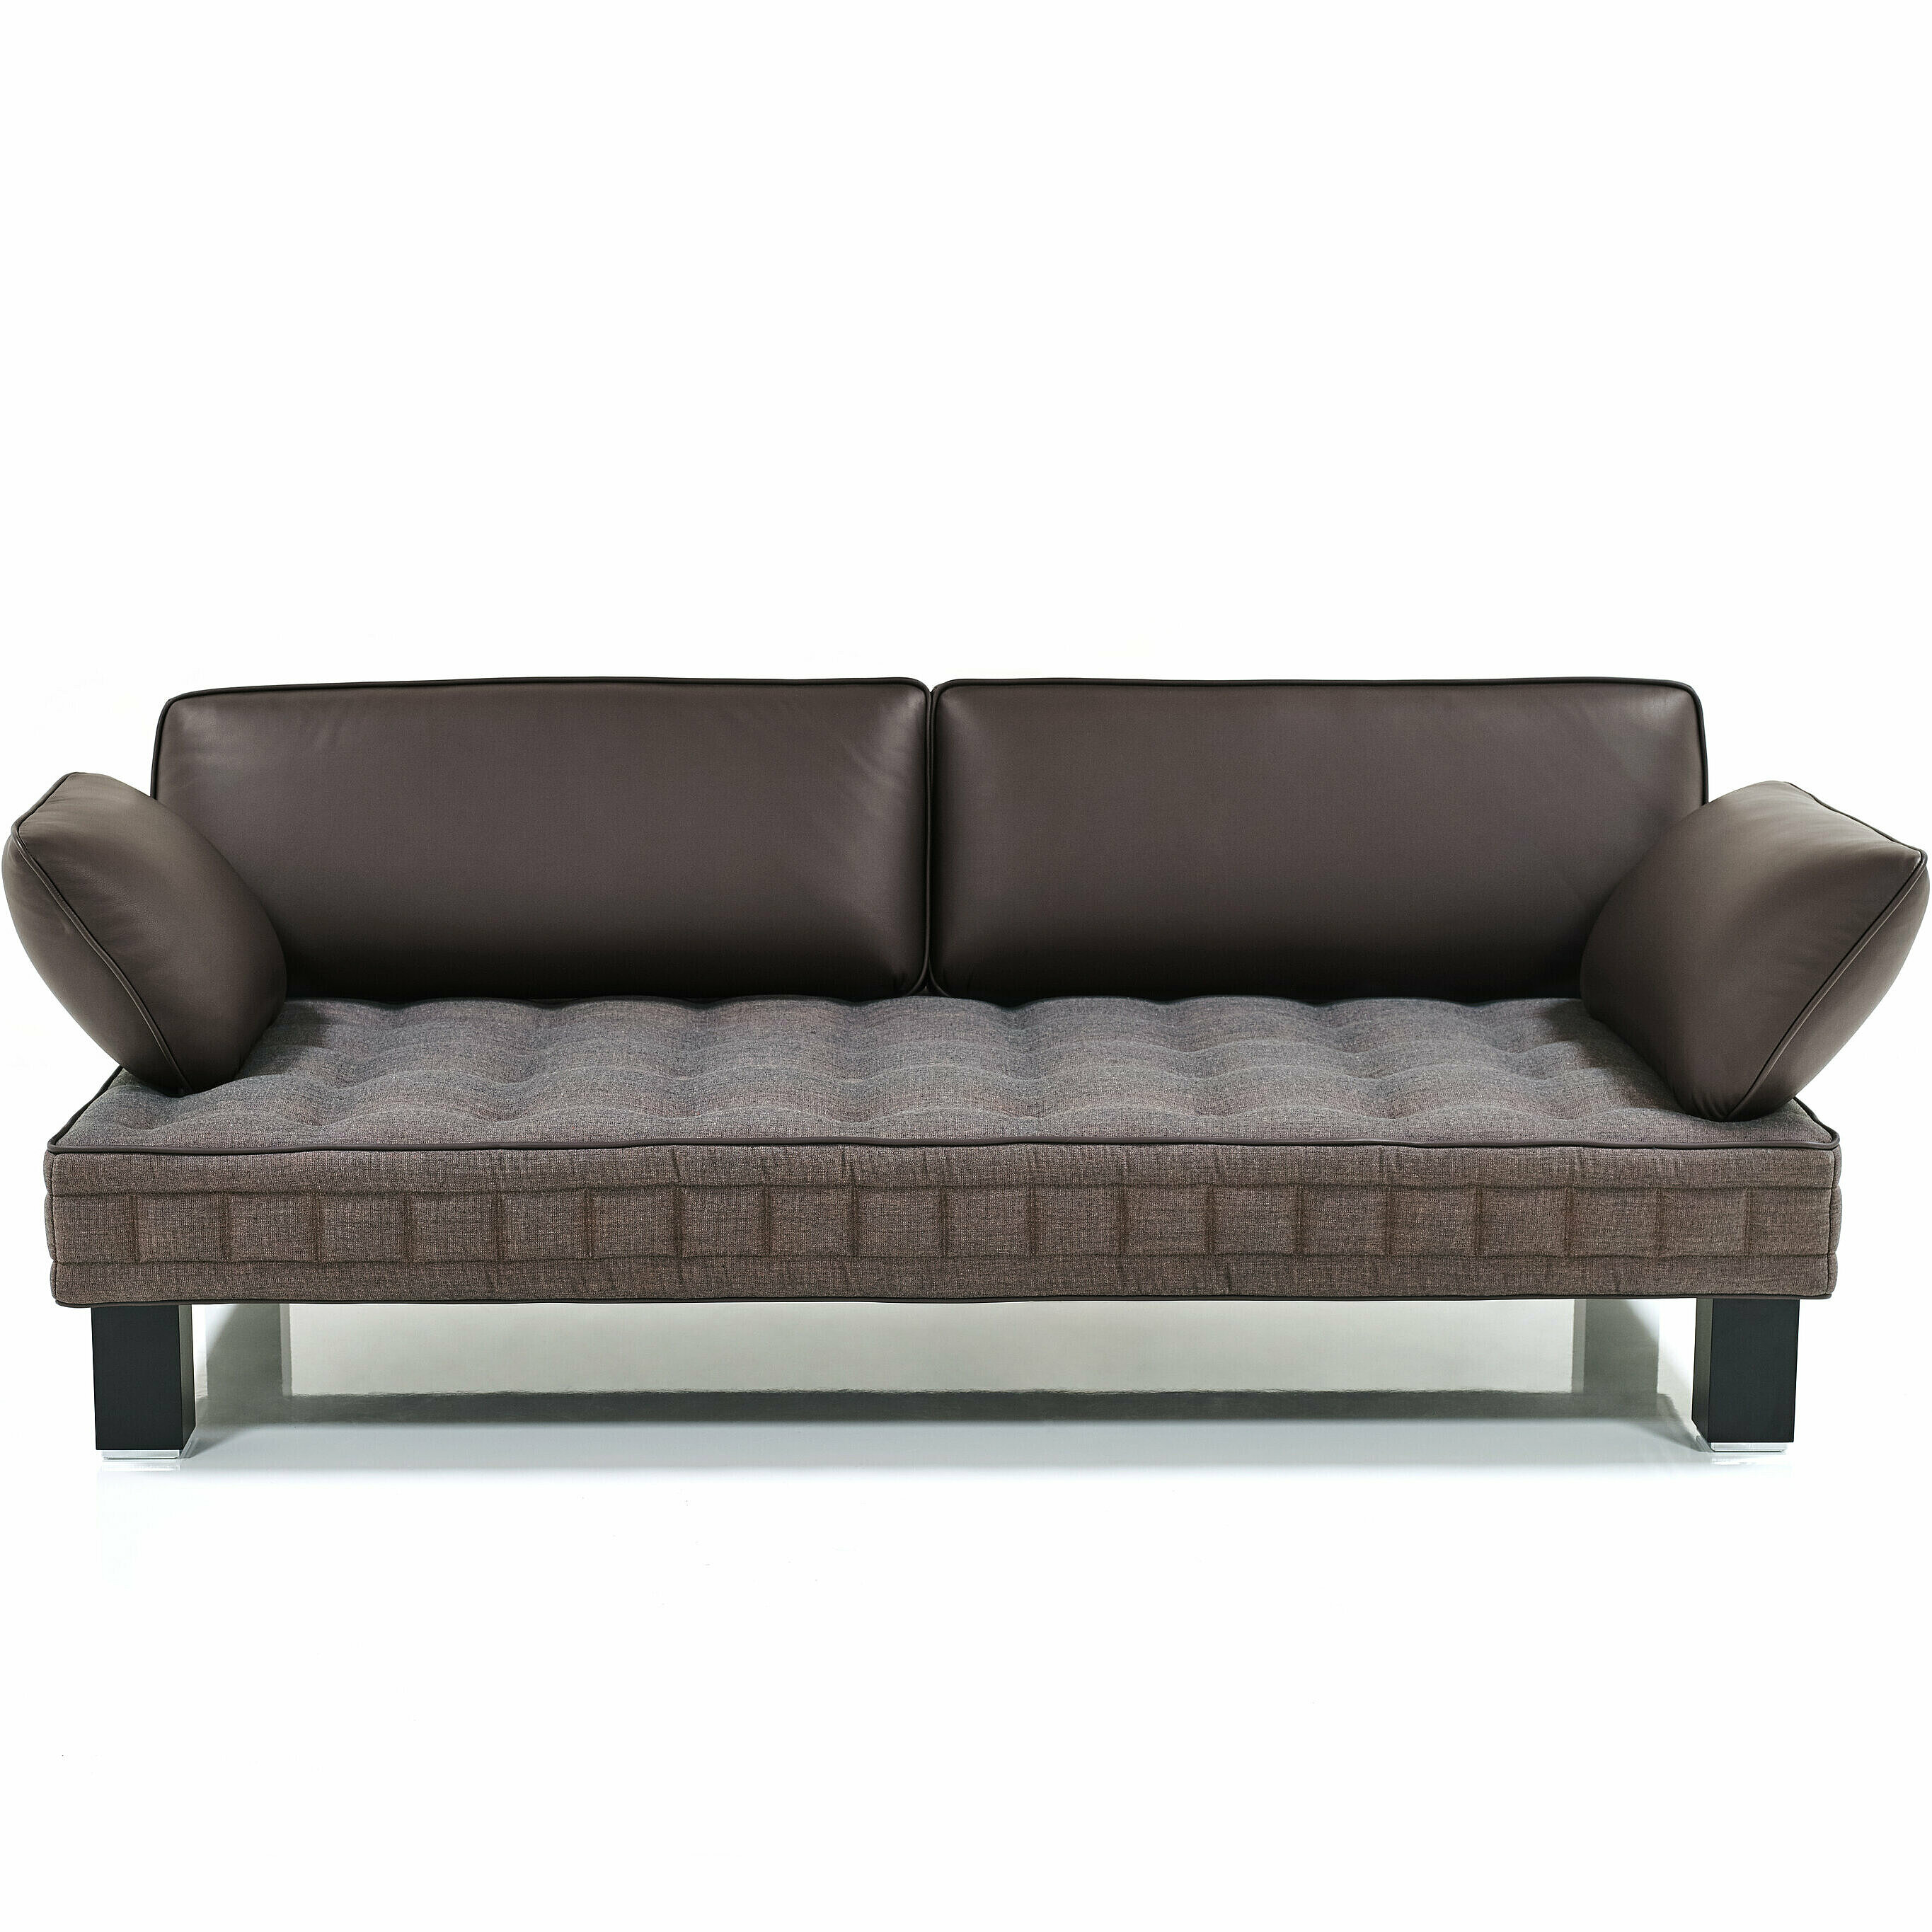 Materassi Sofa mit Sitzfäche in Arena-bronce und Lehnen + Keder in Leder Color-aubergine